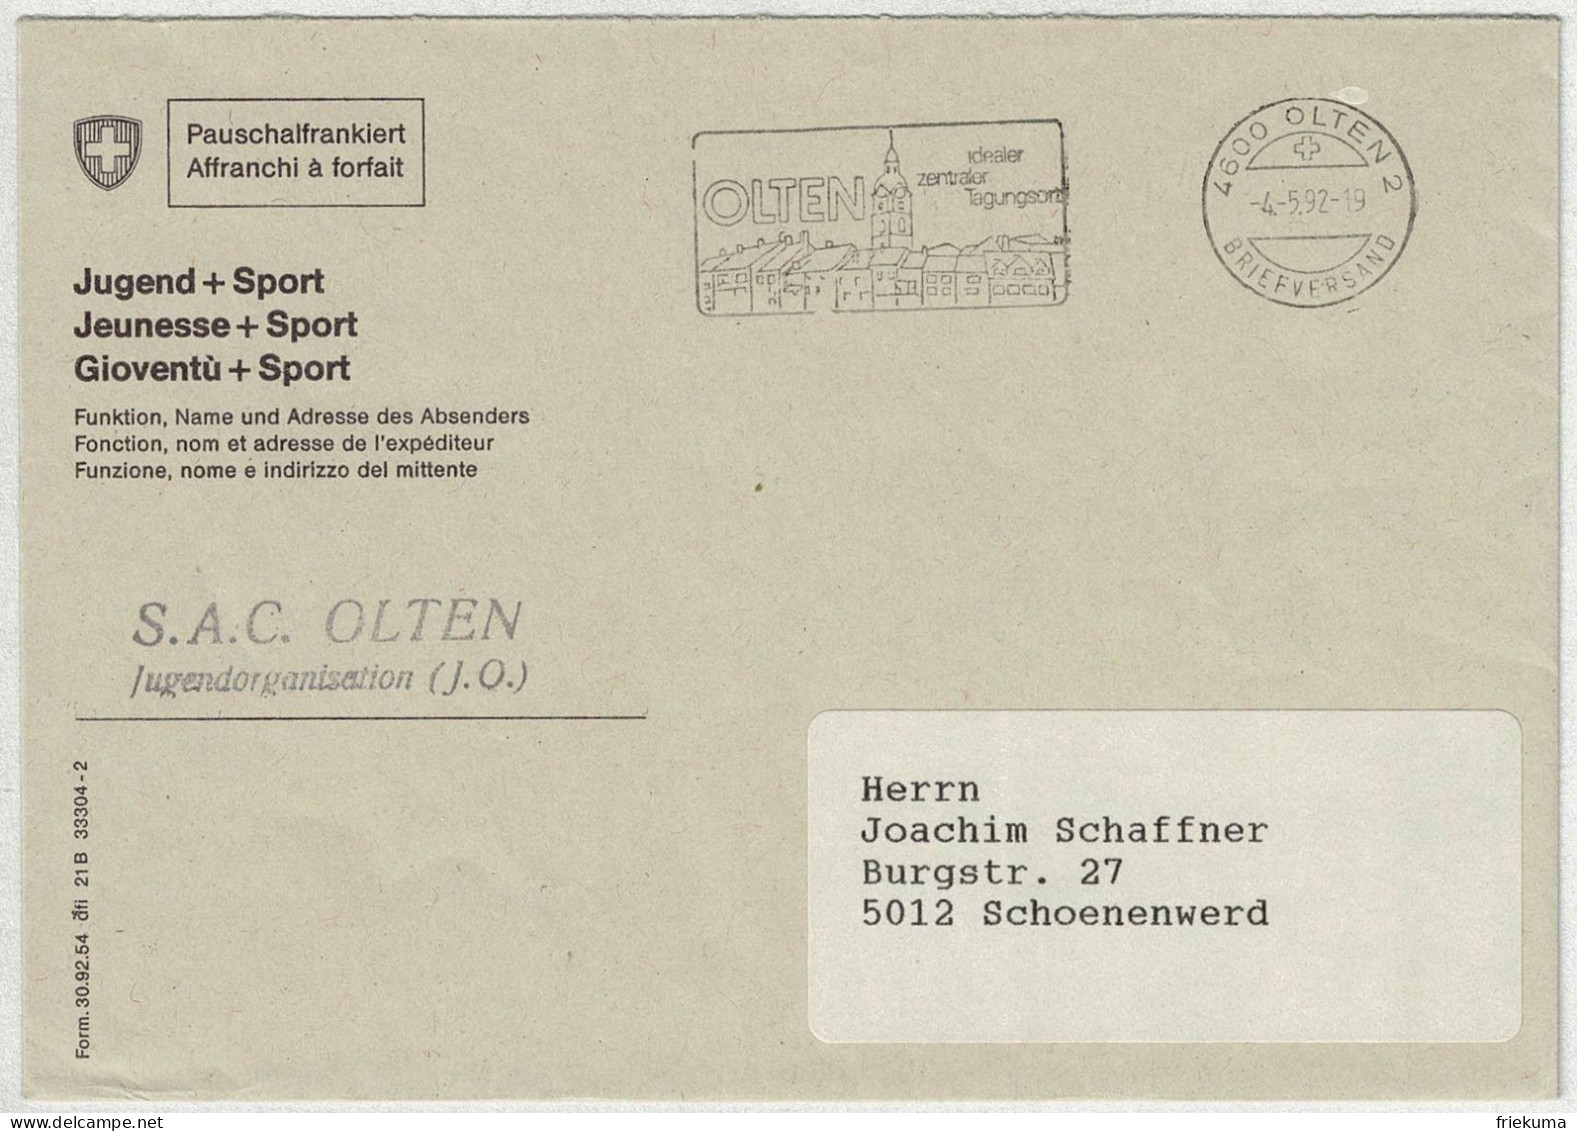 Schweiz 1992, Brief Pauschalfrankiert Olten - Schönenwerd - Storia Postale